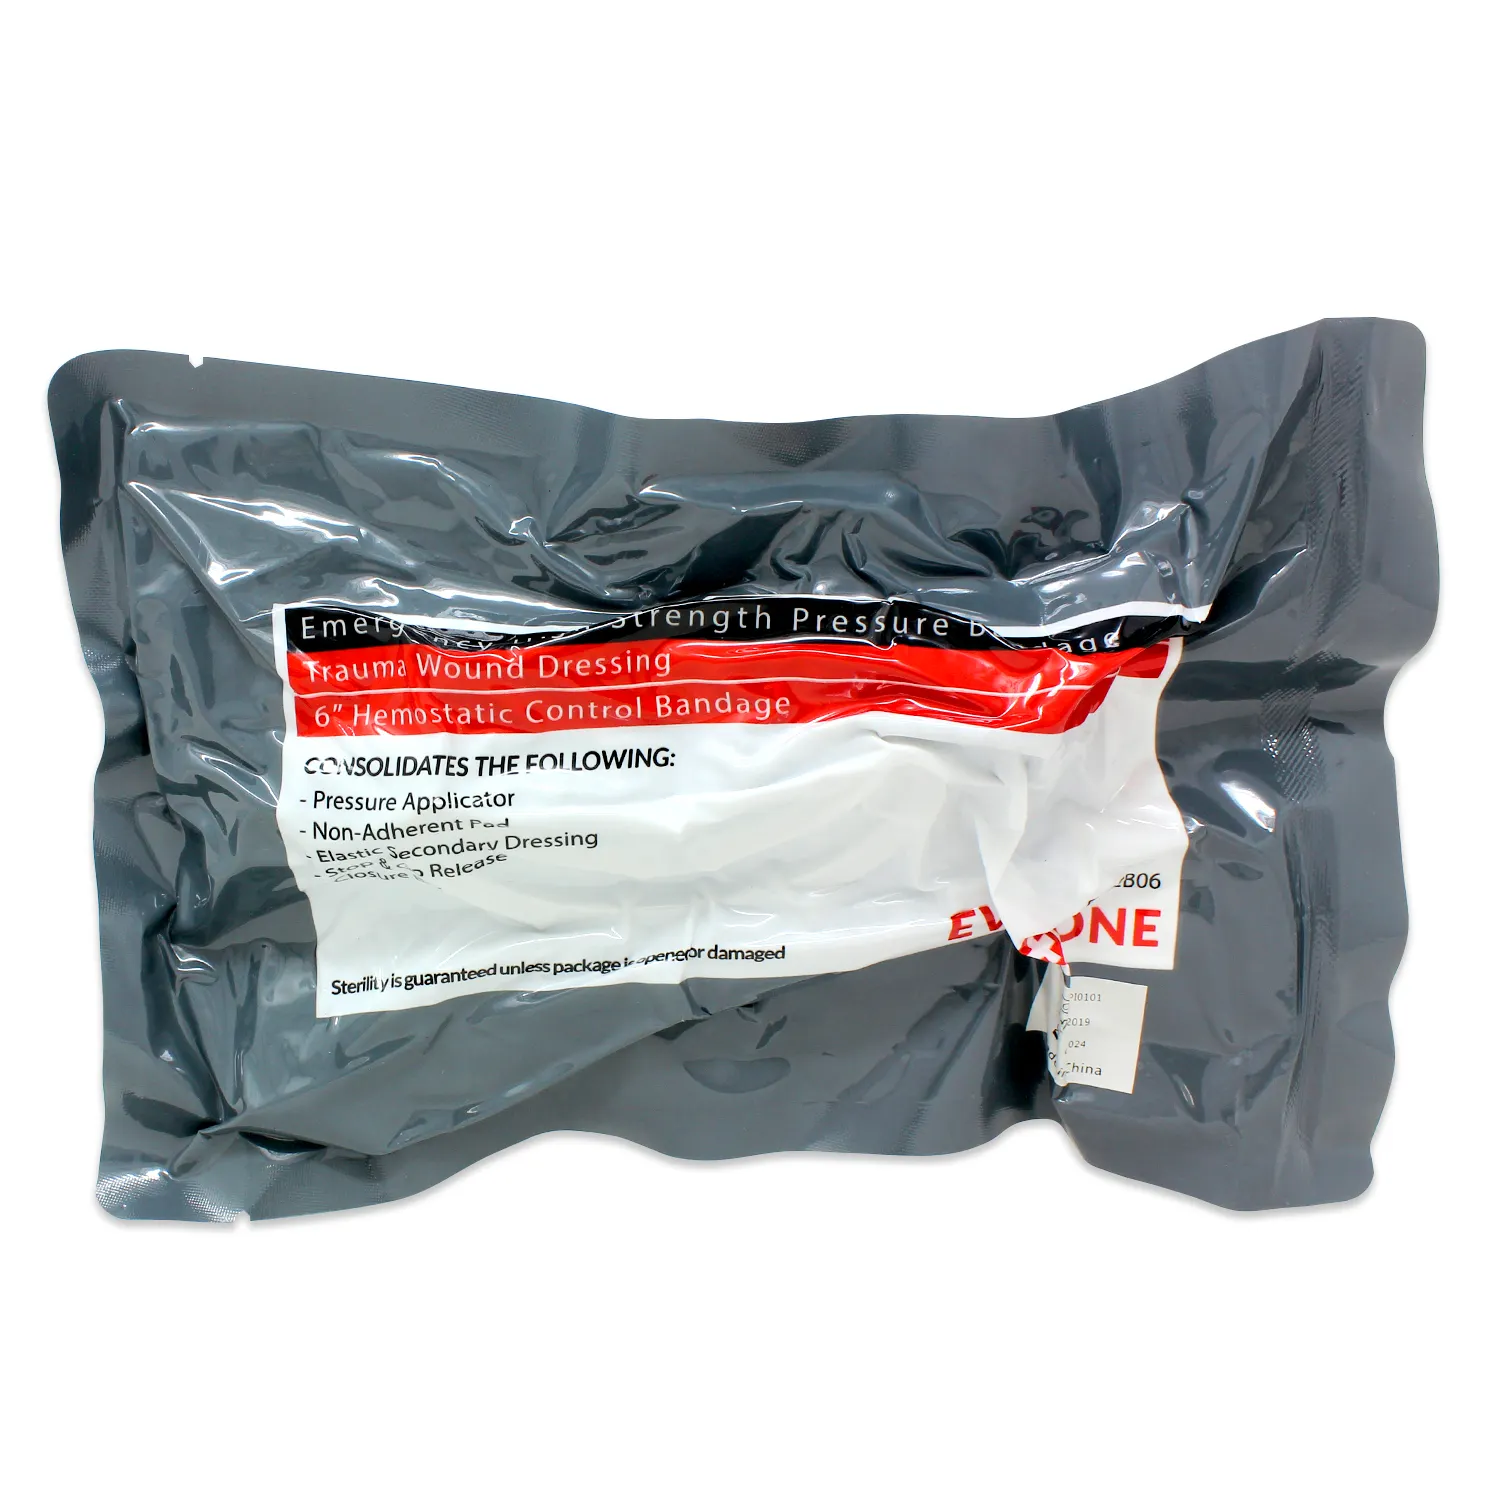 アメリカの応急処置包帯サプライヤー6インチ緊急バンド滅菌圧縮包帯外傷ドレッシング応急処置キット包帯FAK